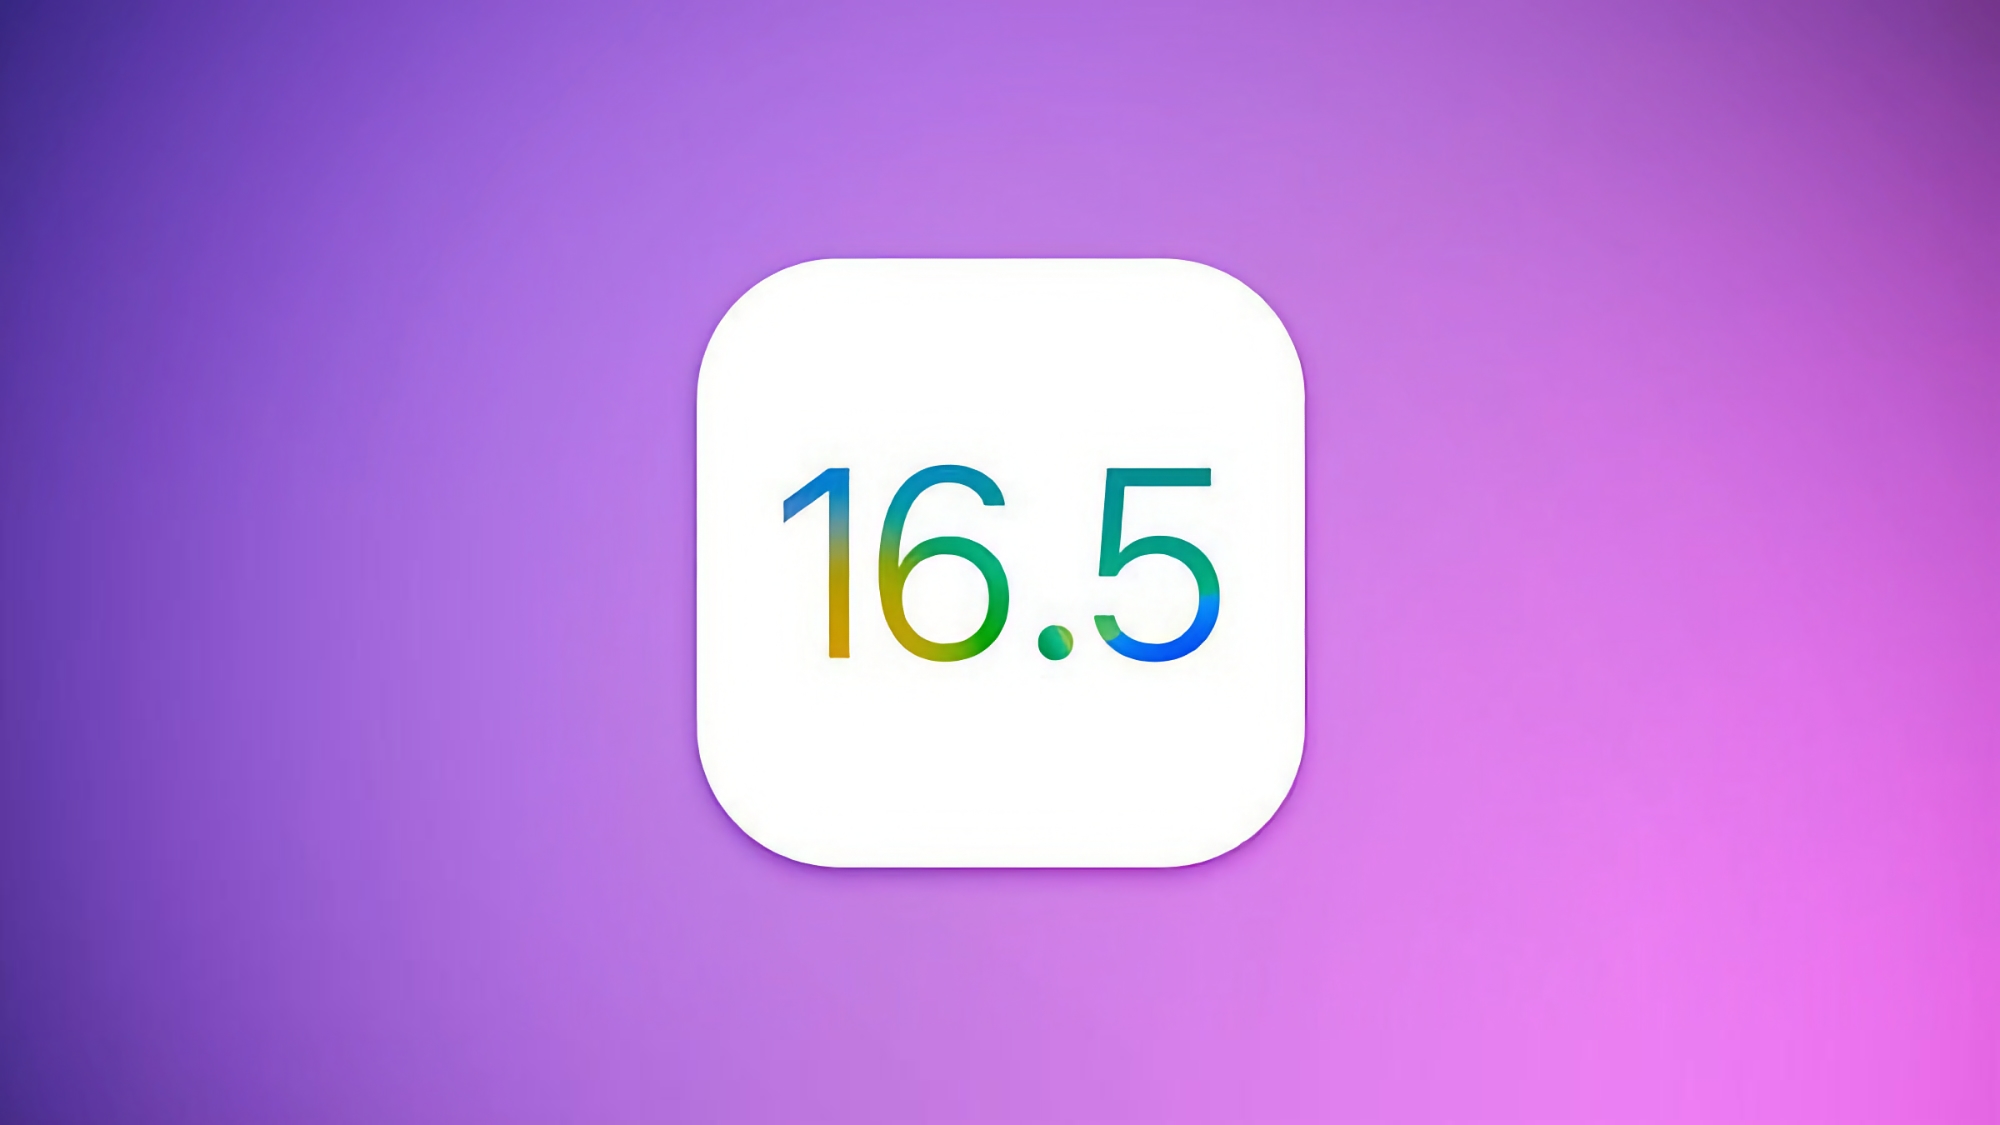 Apple heeft een pre-release versie van iOS 16.5 vrijgegeven